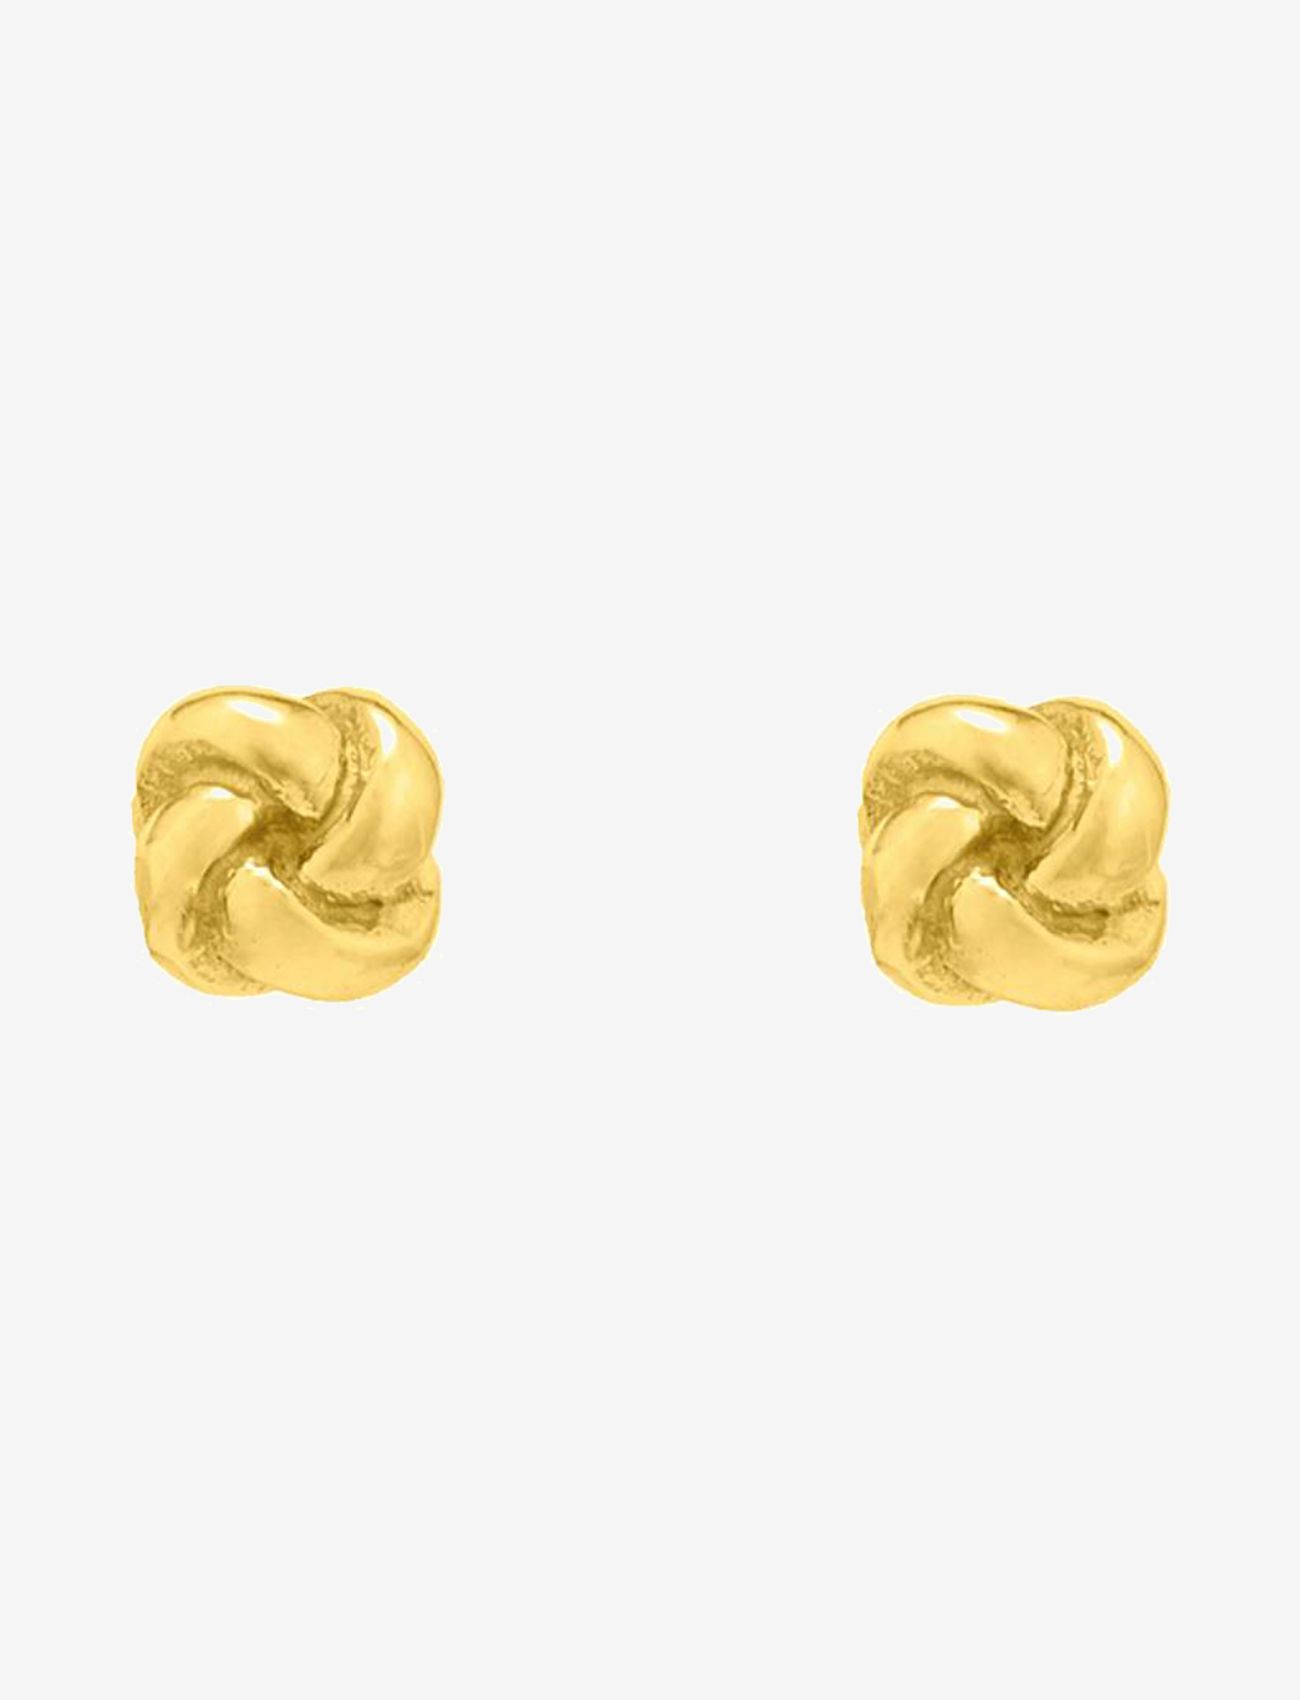 By Jolima - Knot earring - stud earrings - gold - 1